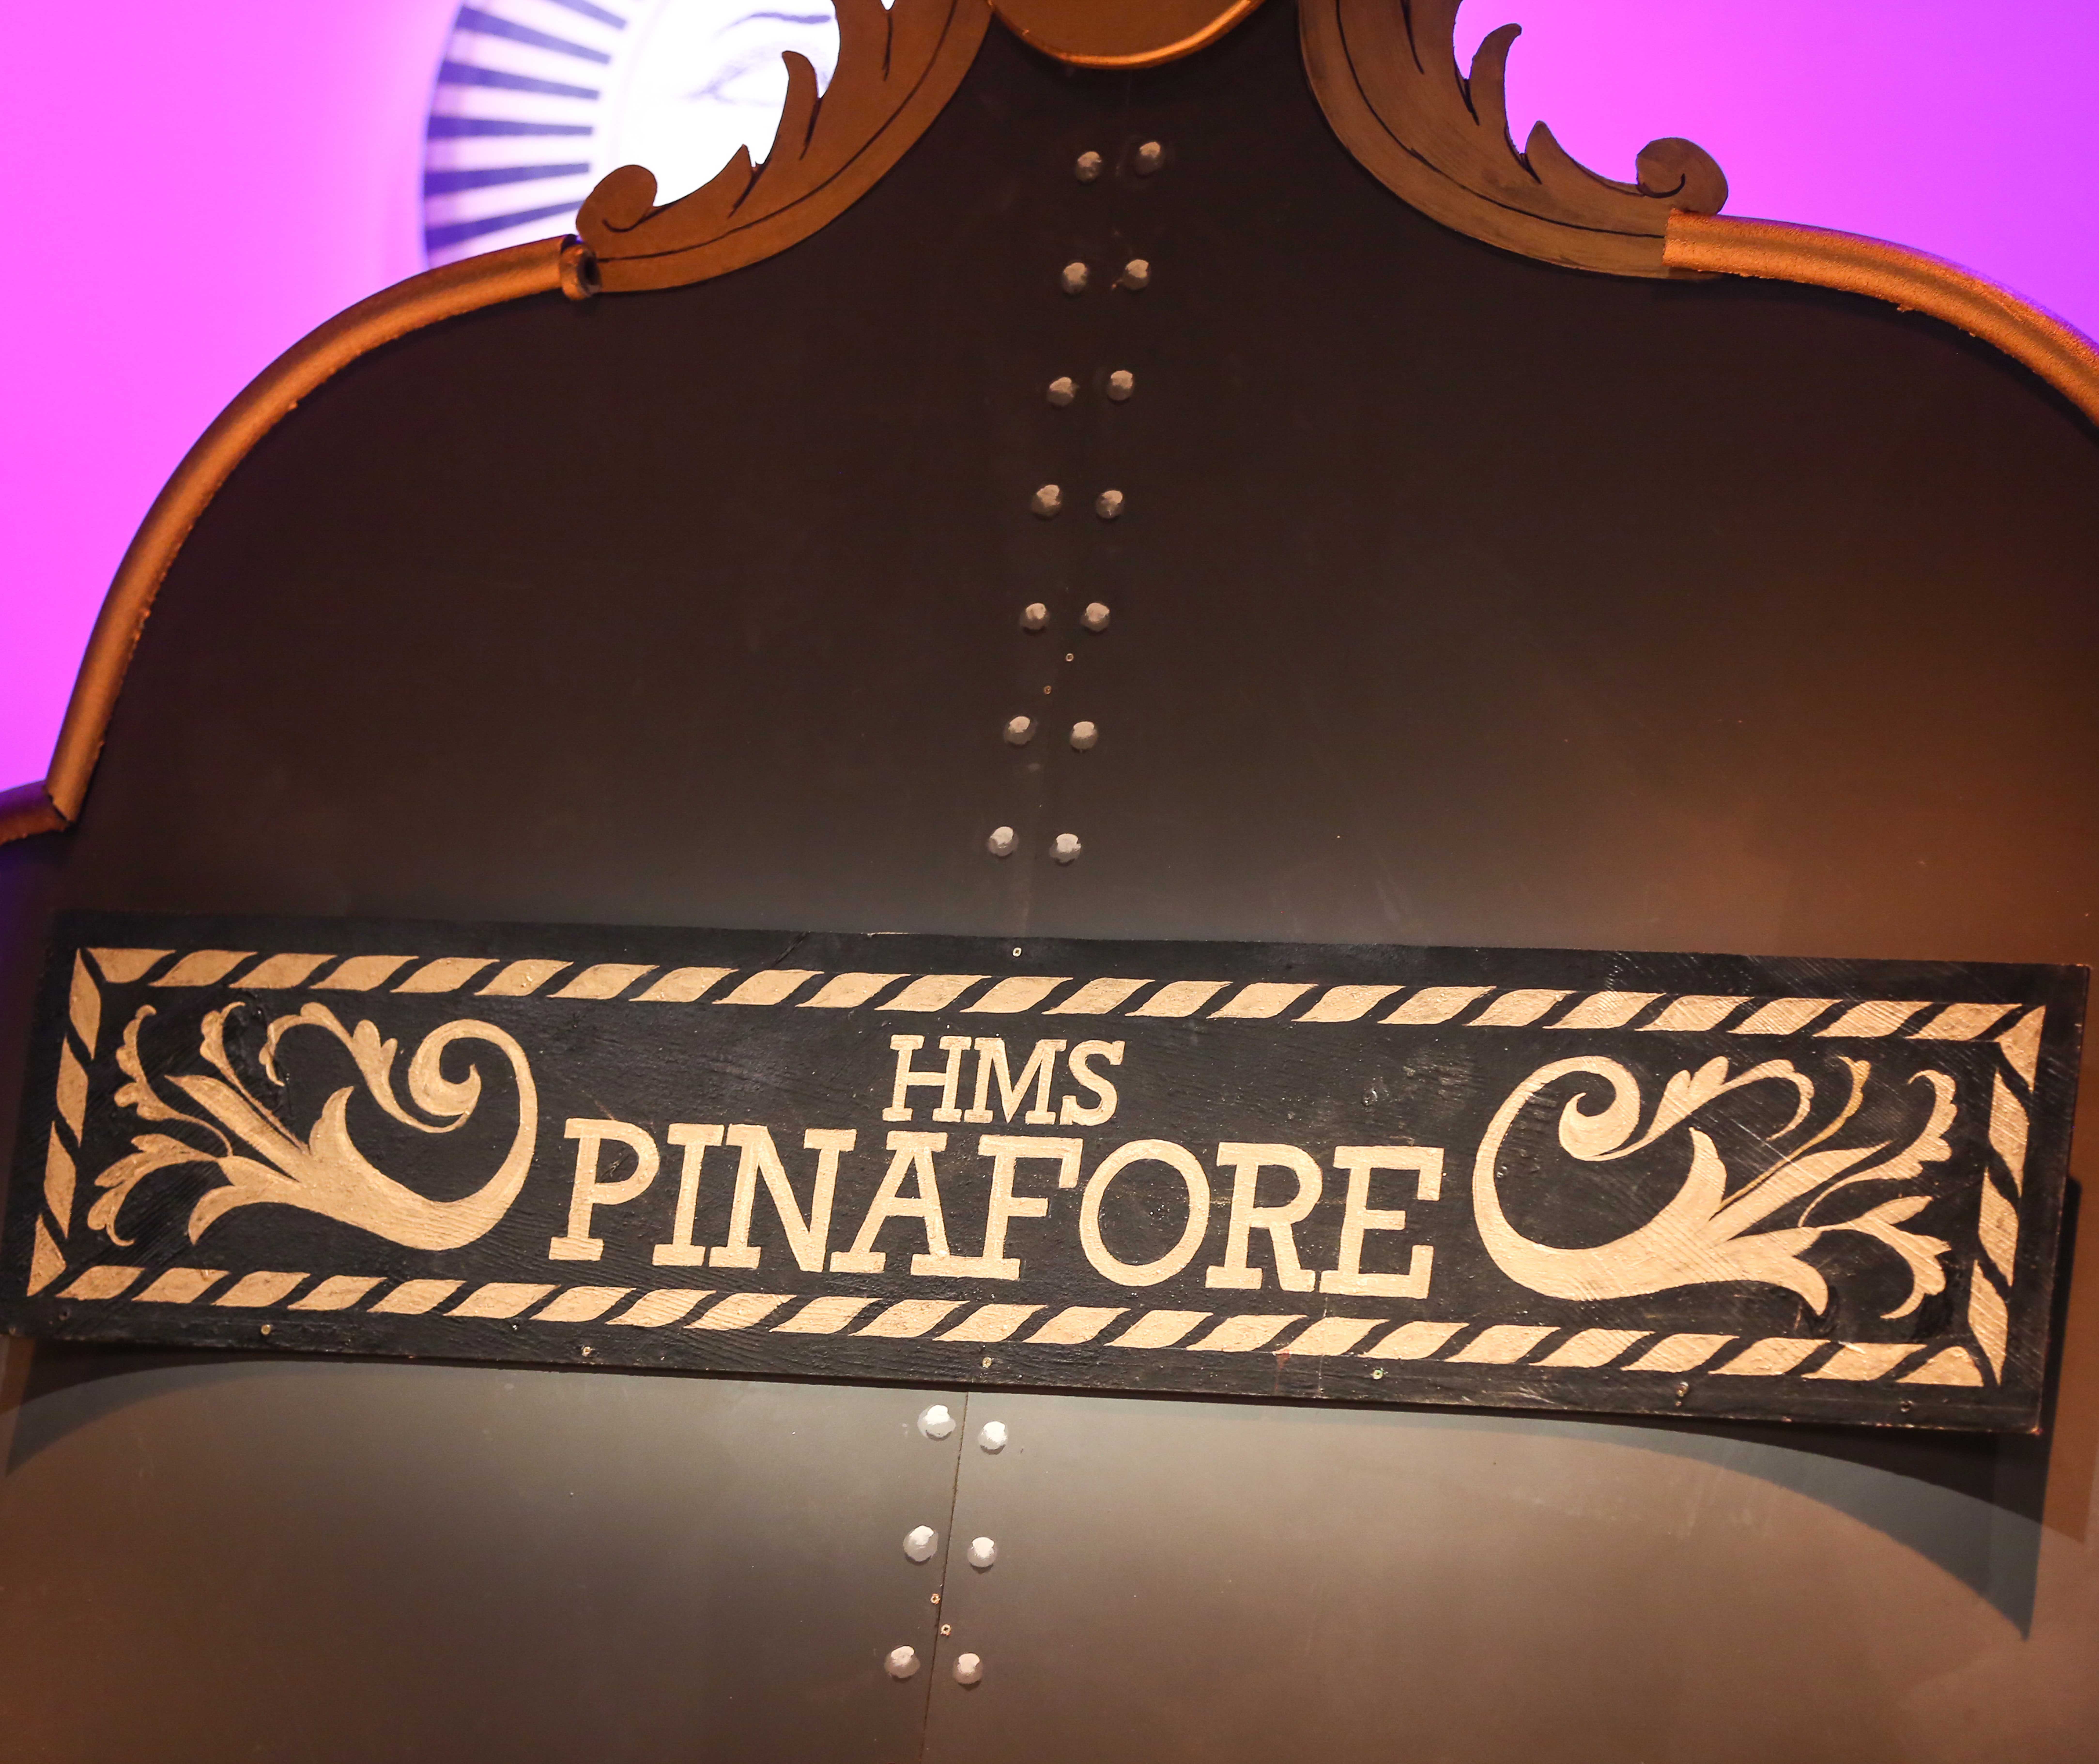 Pinafore name-plate